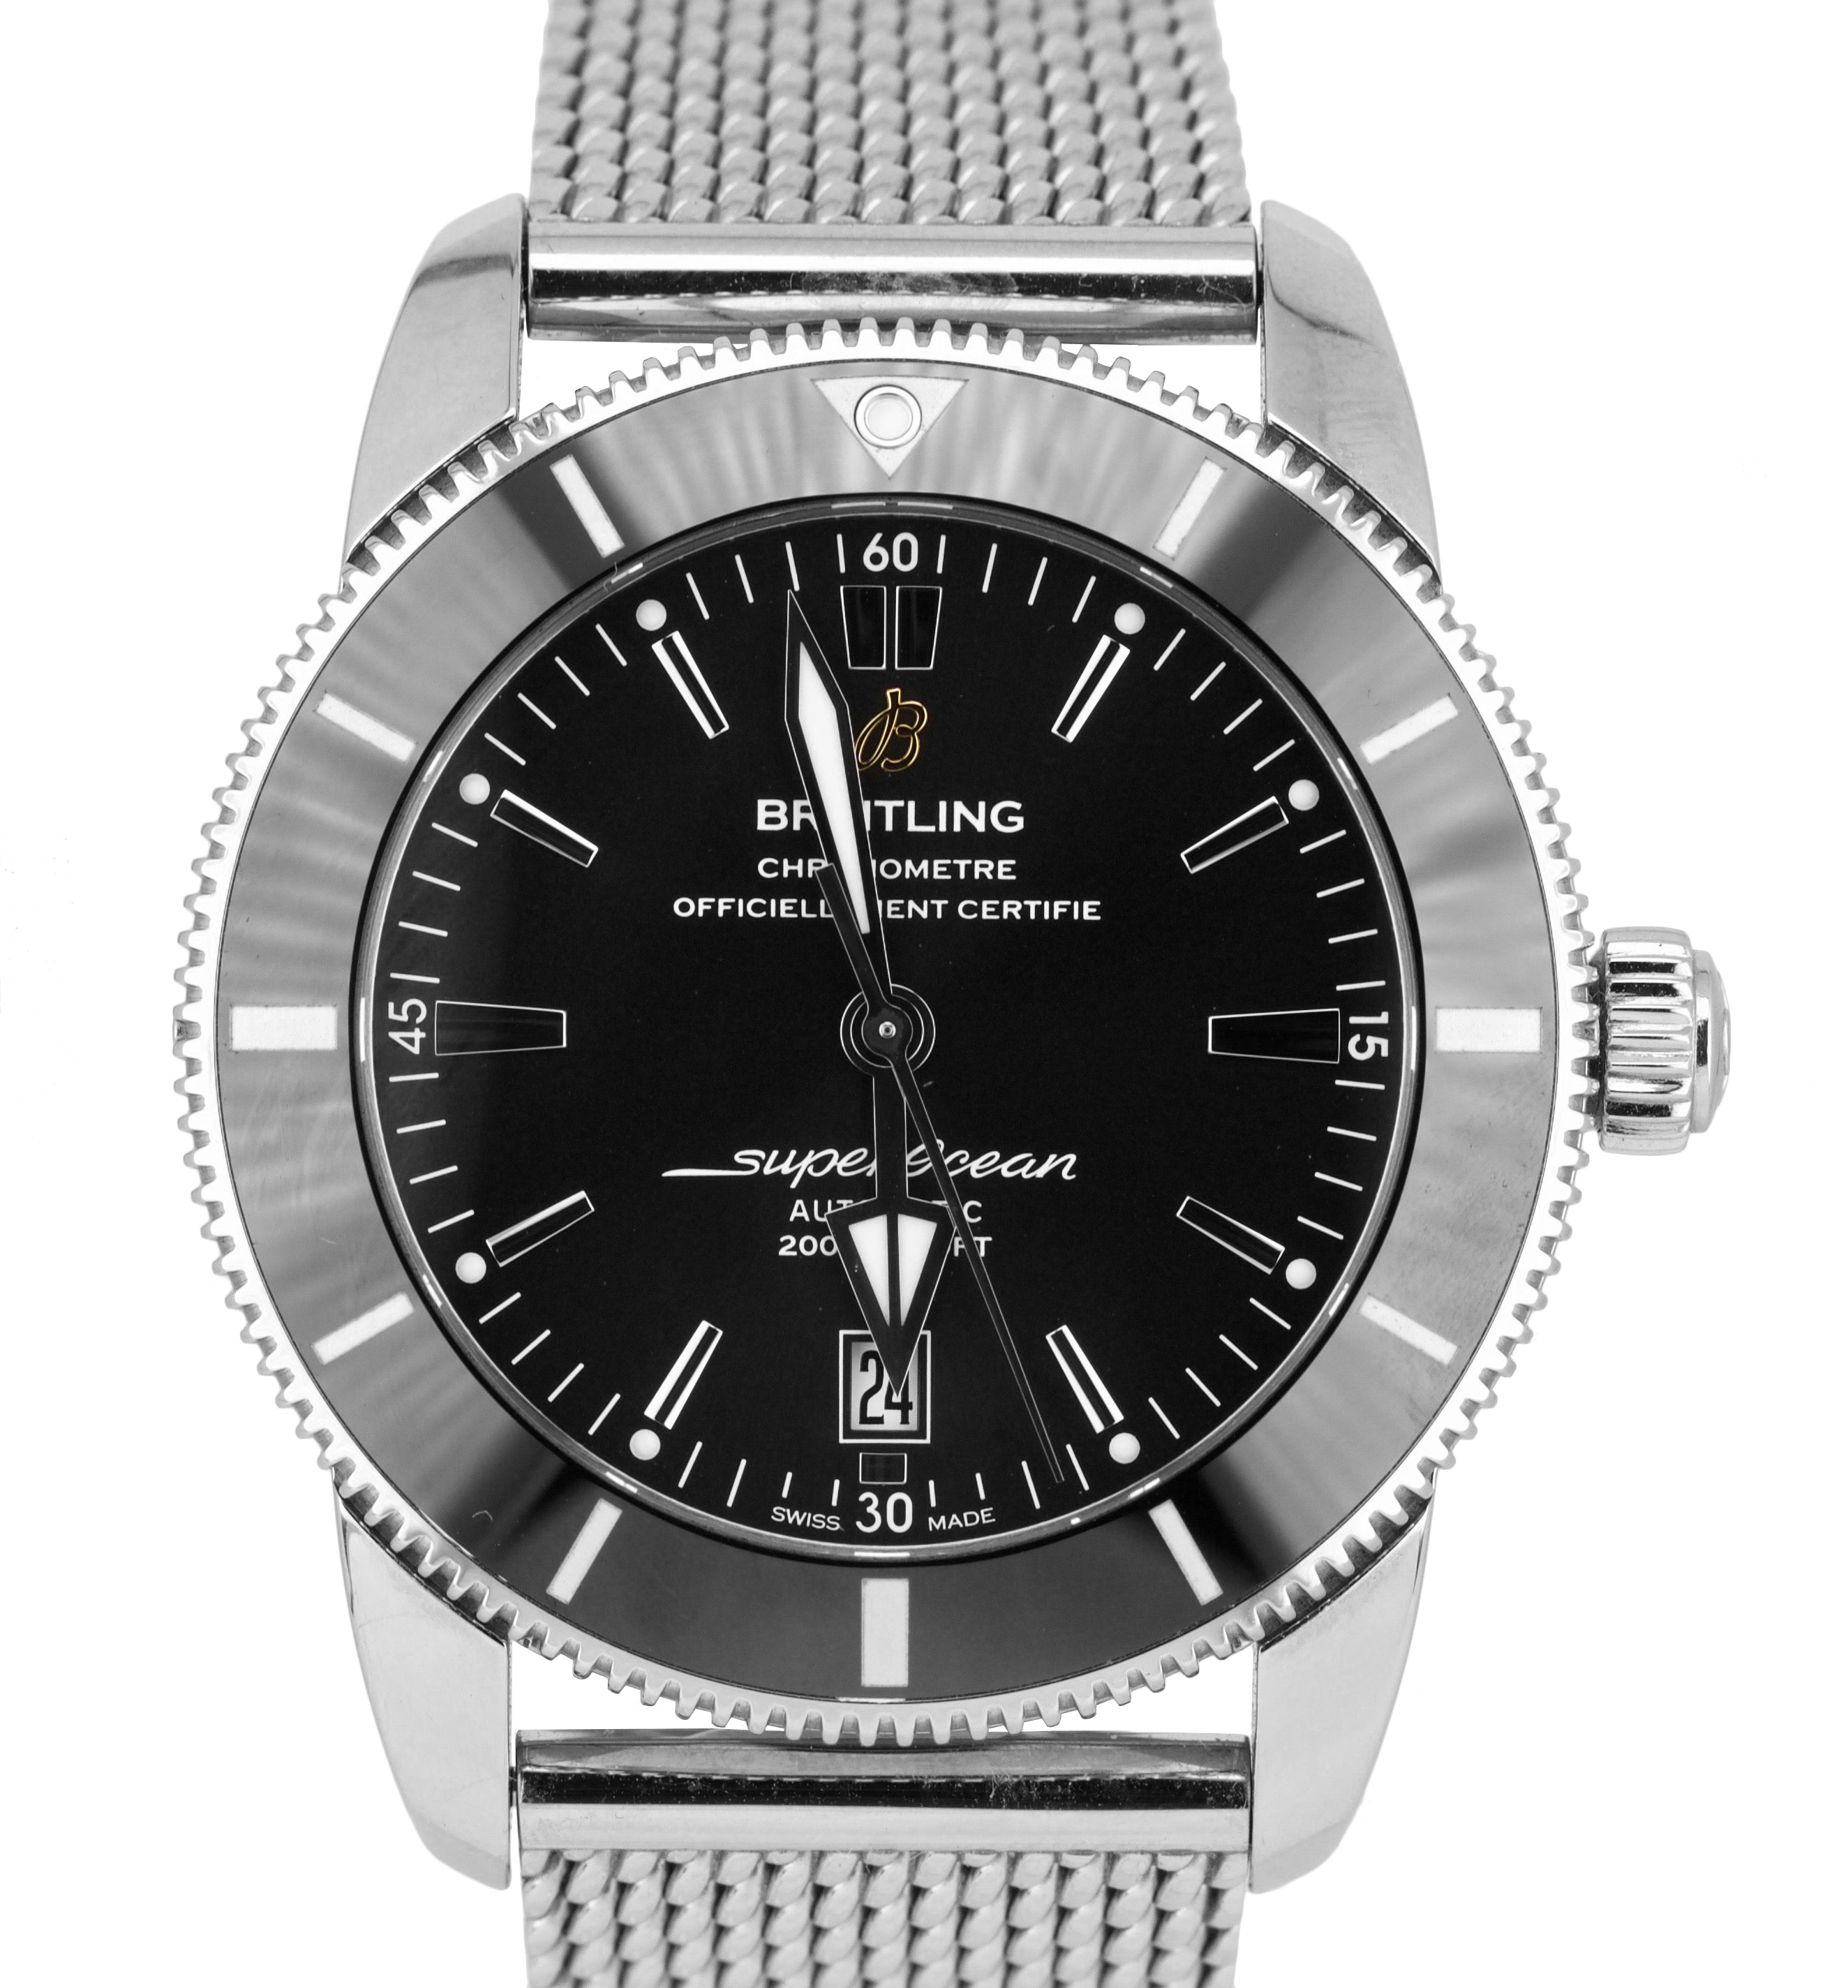 Breitling Superocean Heritage II 46 Black Stainless Mesh AB202012 46mm Watch